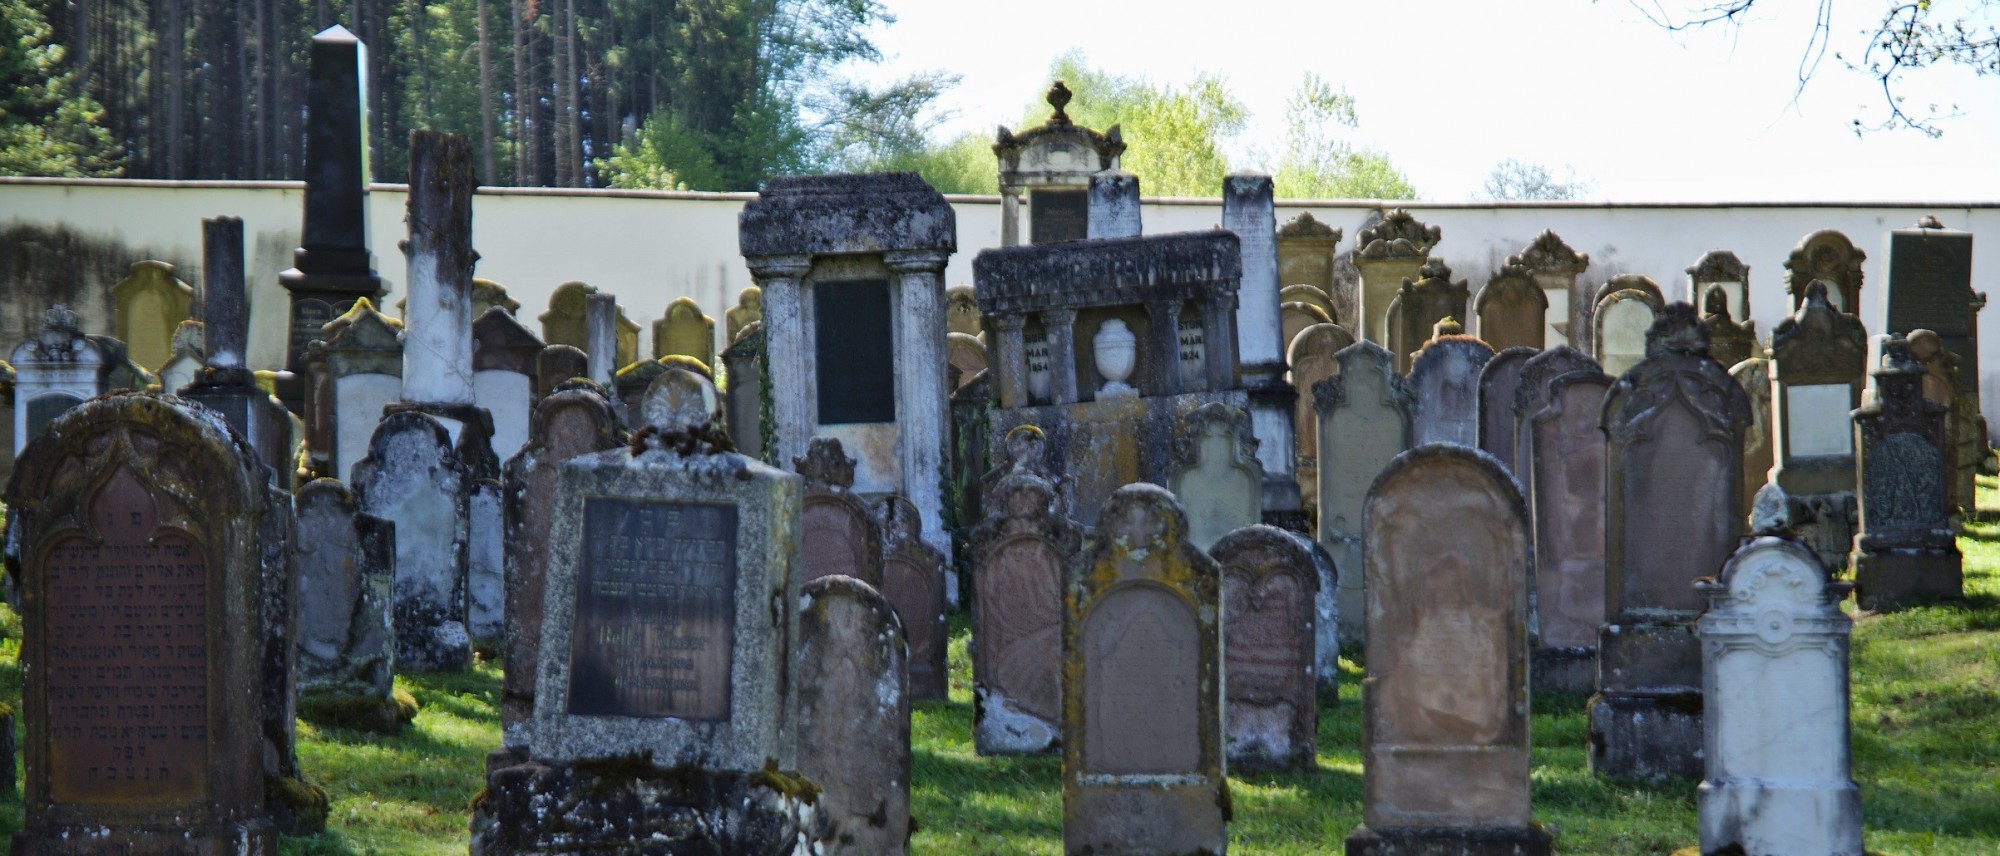 Grabsteine mit hebräischen Inschriften auf dem Friedhof in Krumbach. Führt zur Unterseite &quot;Krumbach&quot;.